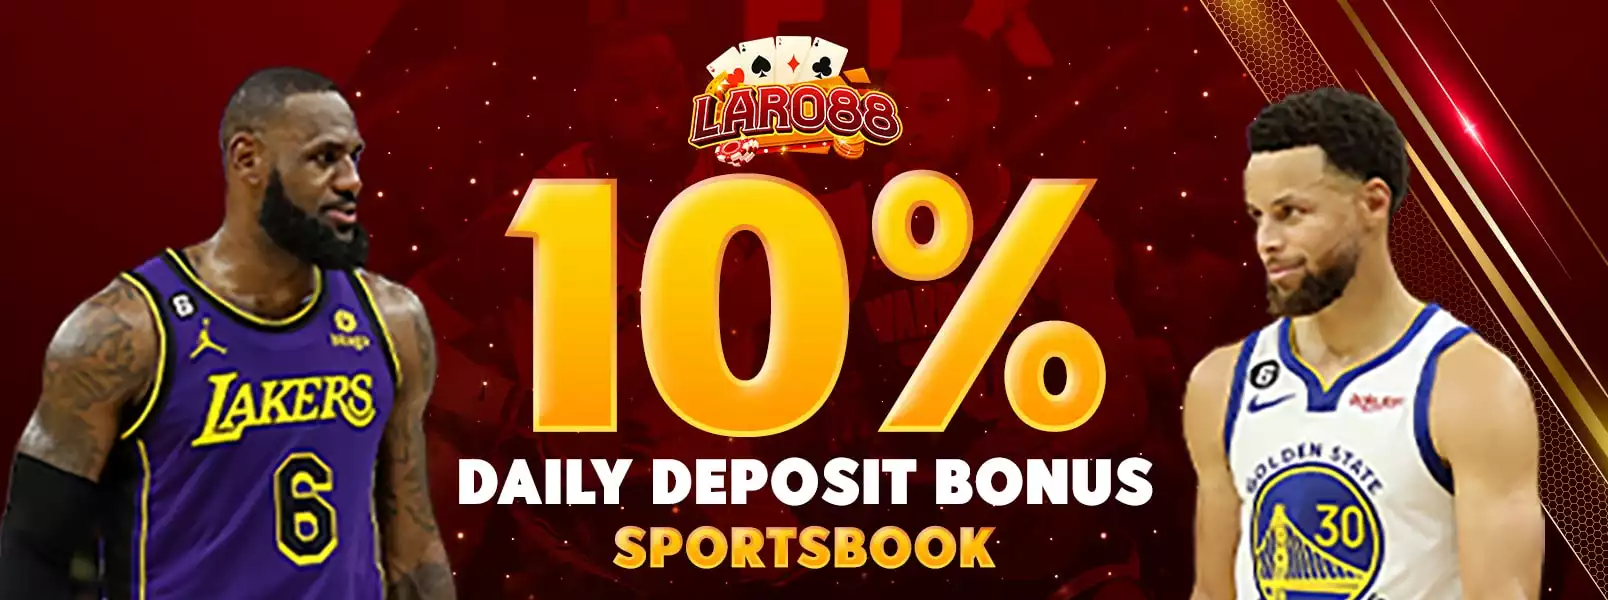 Berbagai Bonus dan Permainan di Party Casino Online Sports Betting